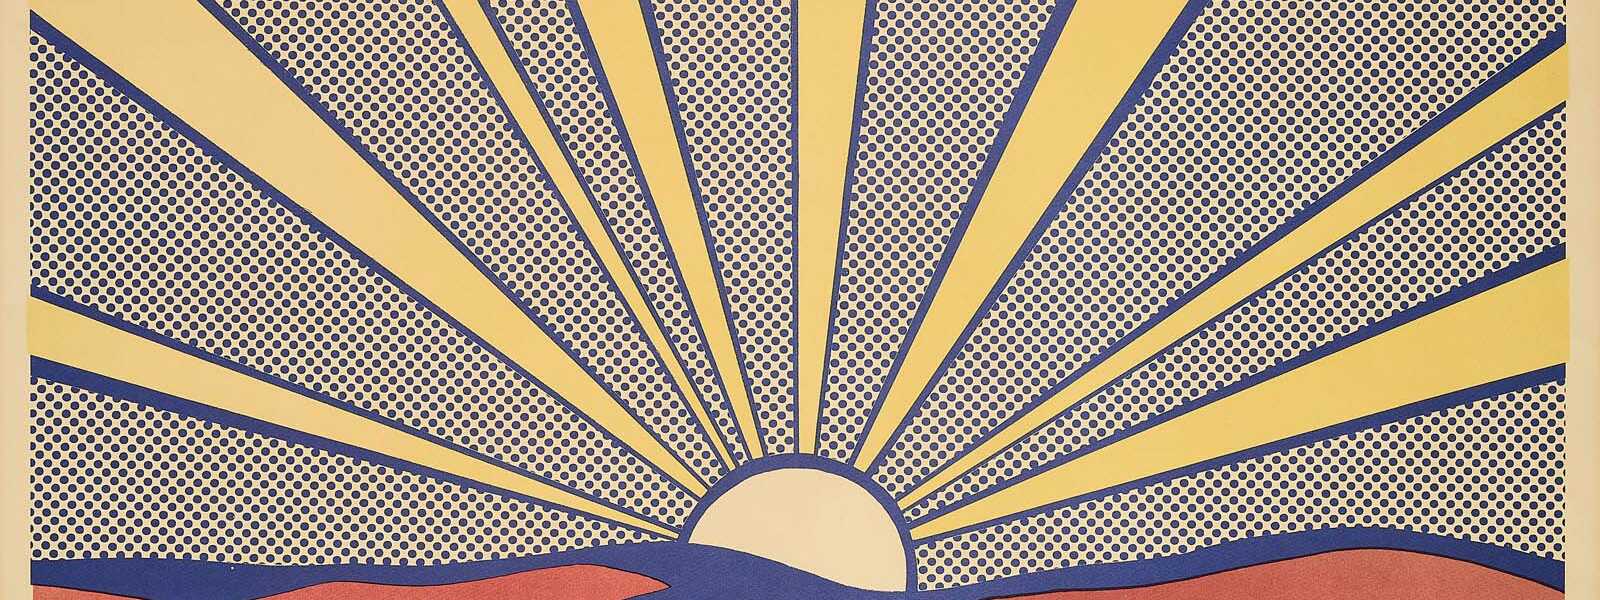 Roy Lichtenstein. Sunrise